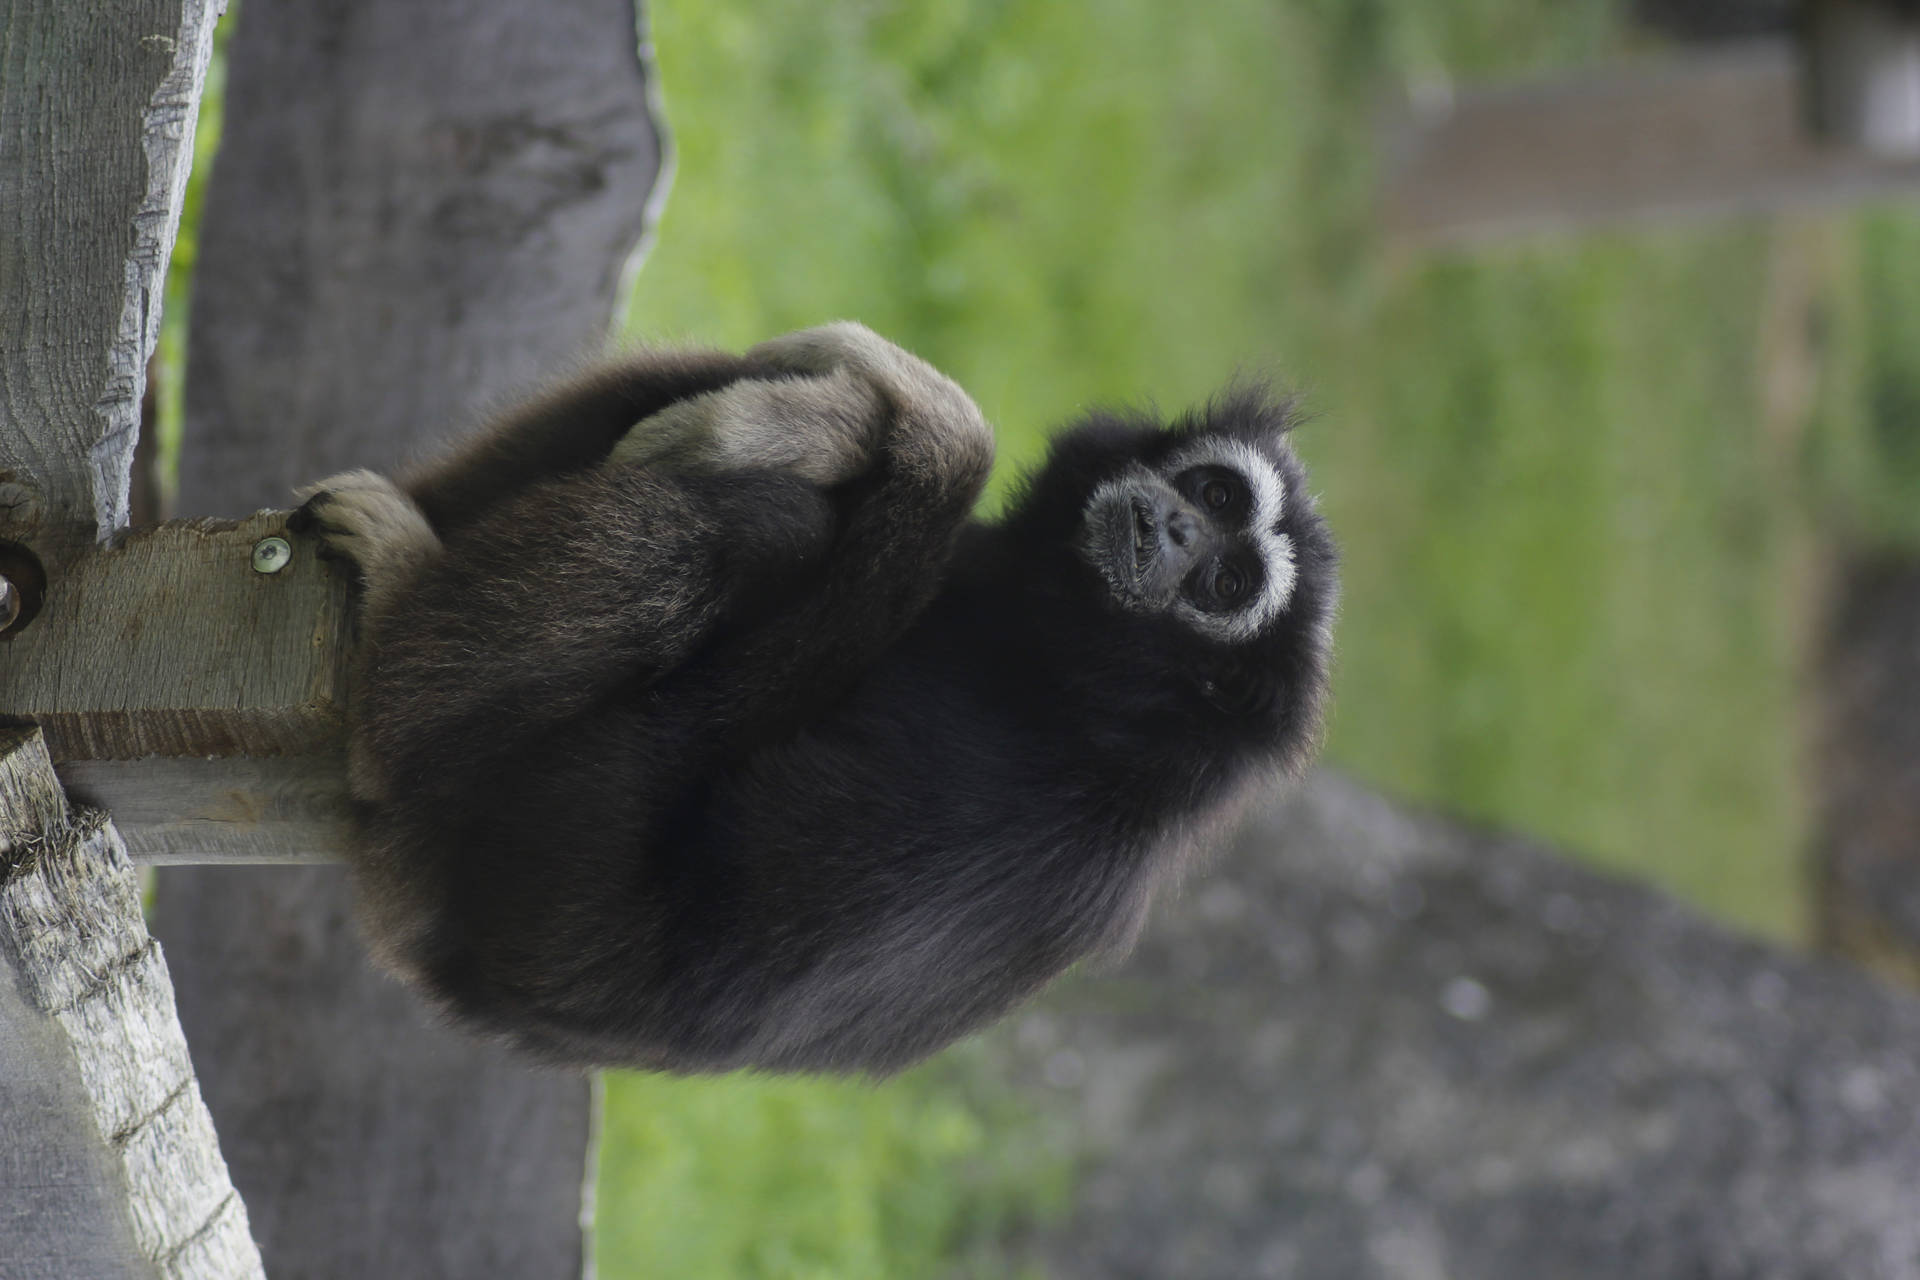 Gibbon Outside Enclosure